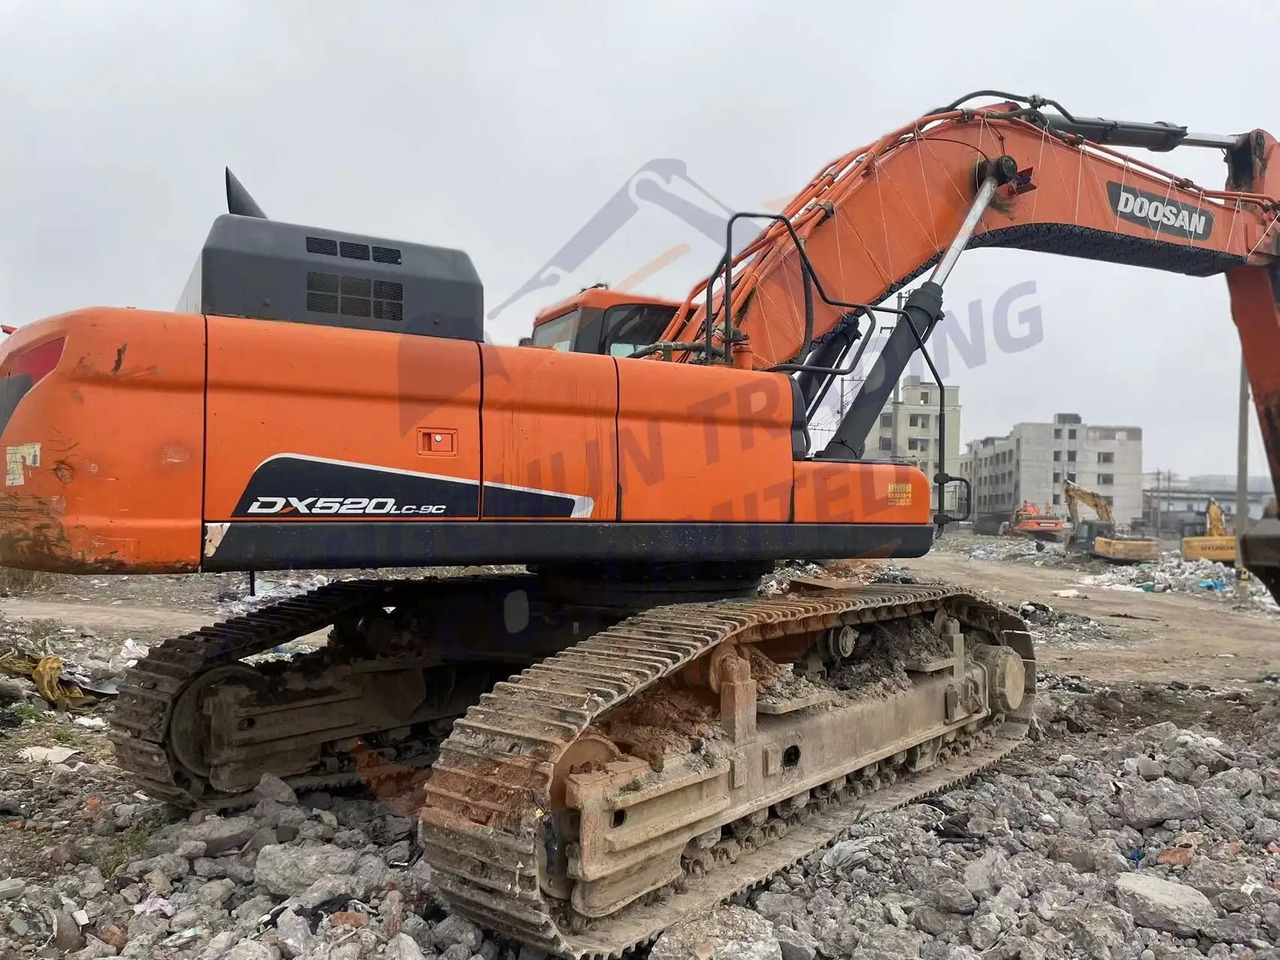 履带式挖掘机 Low running hours Used Doosan excavator DX520LC-9C in good condition for sale：图3